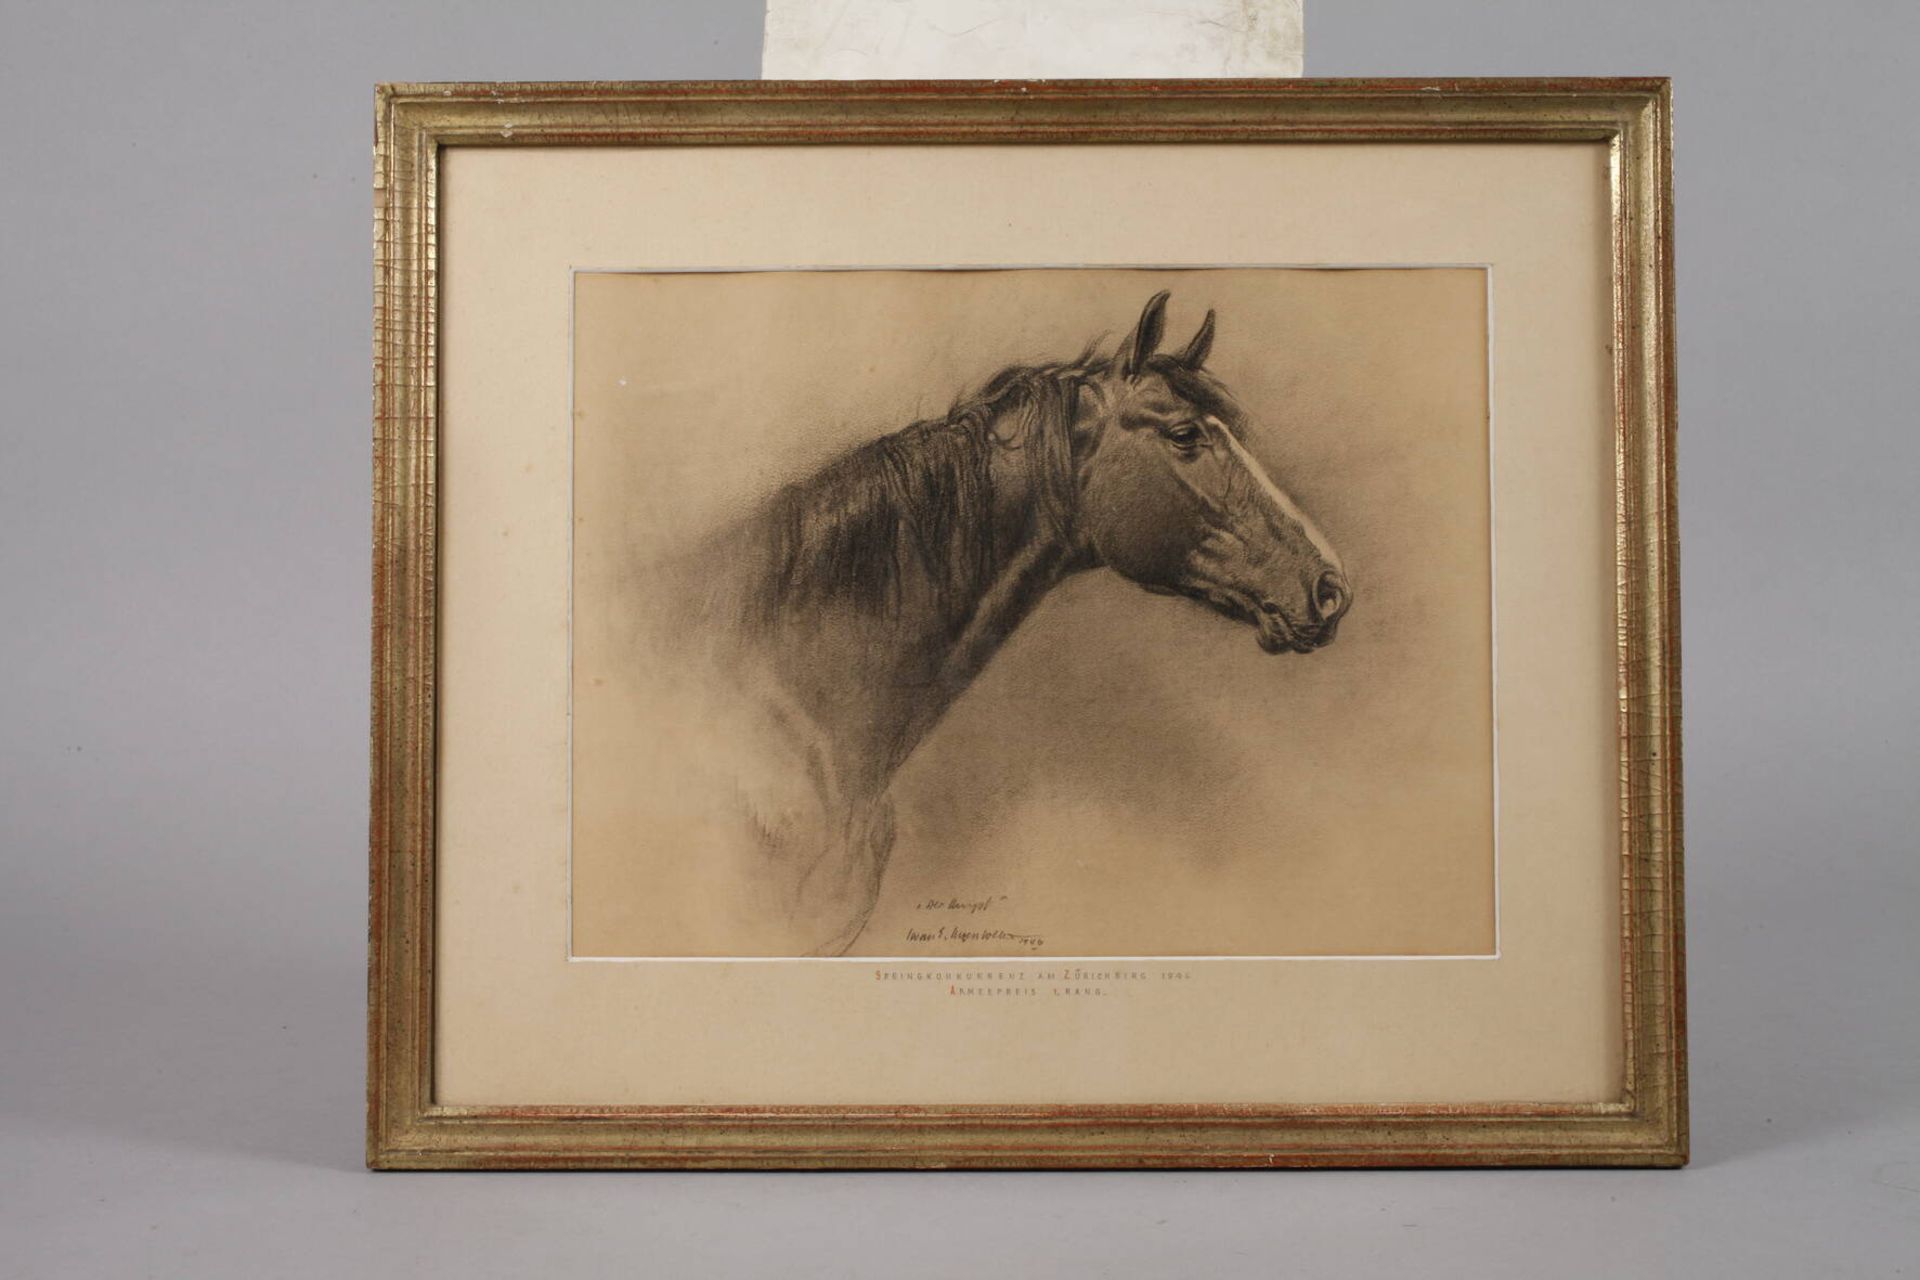 Iwan E. Hugentobler, "Der Hengst"fein naturalistisch ausgeführtes Pferdekopfportrait, Hugentobler - Bild 2 aus 3